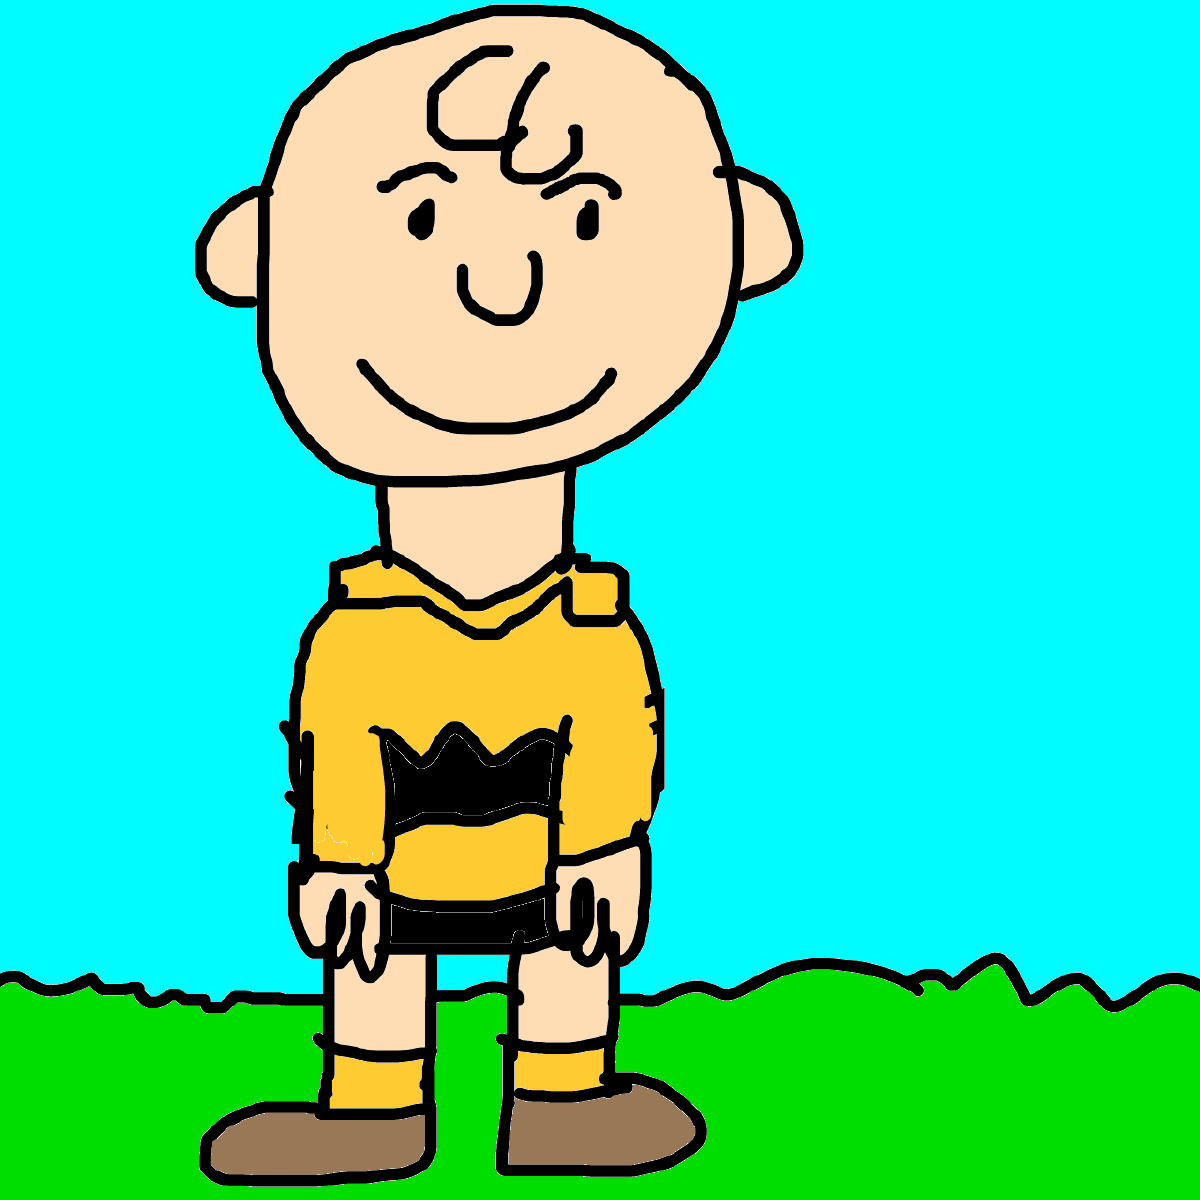 Charlie Brown by Dariusman143